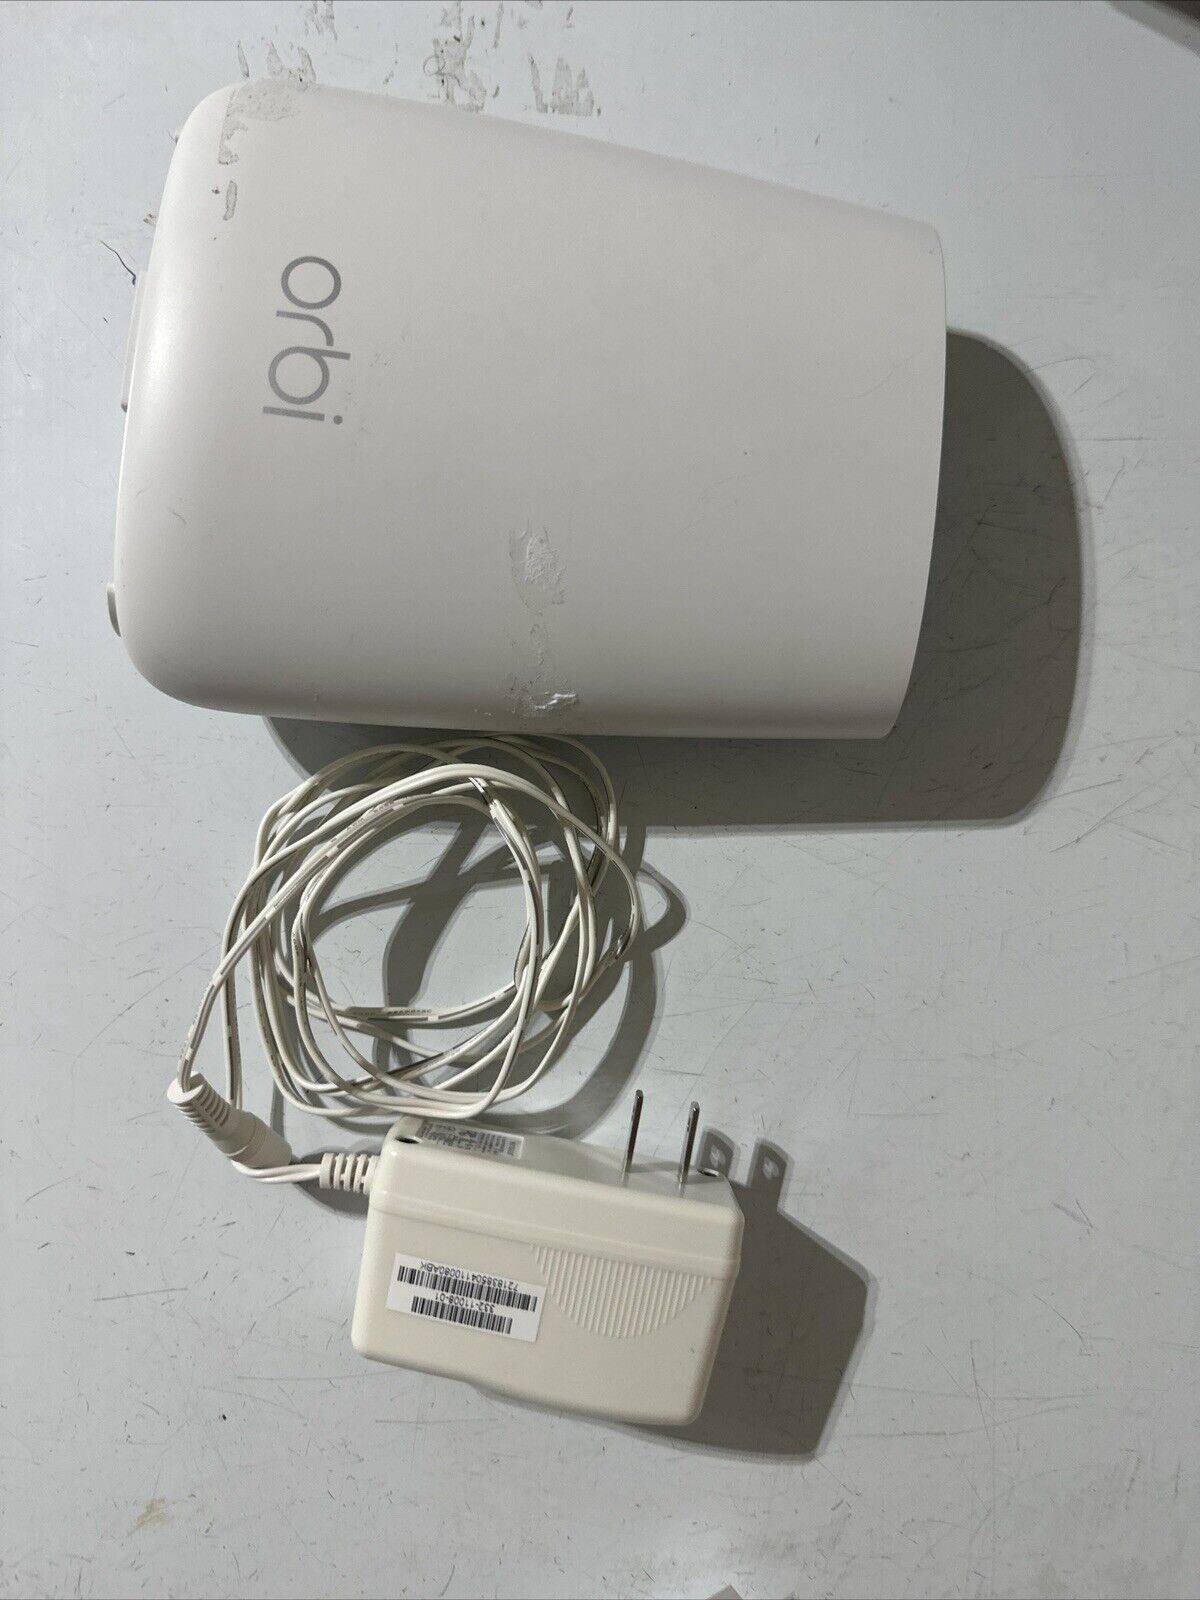 Netgear Orbi WIFI Router RBR20